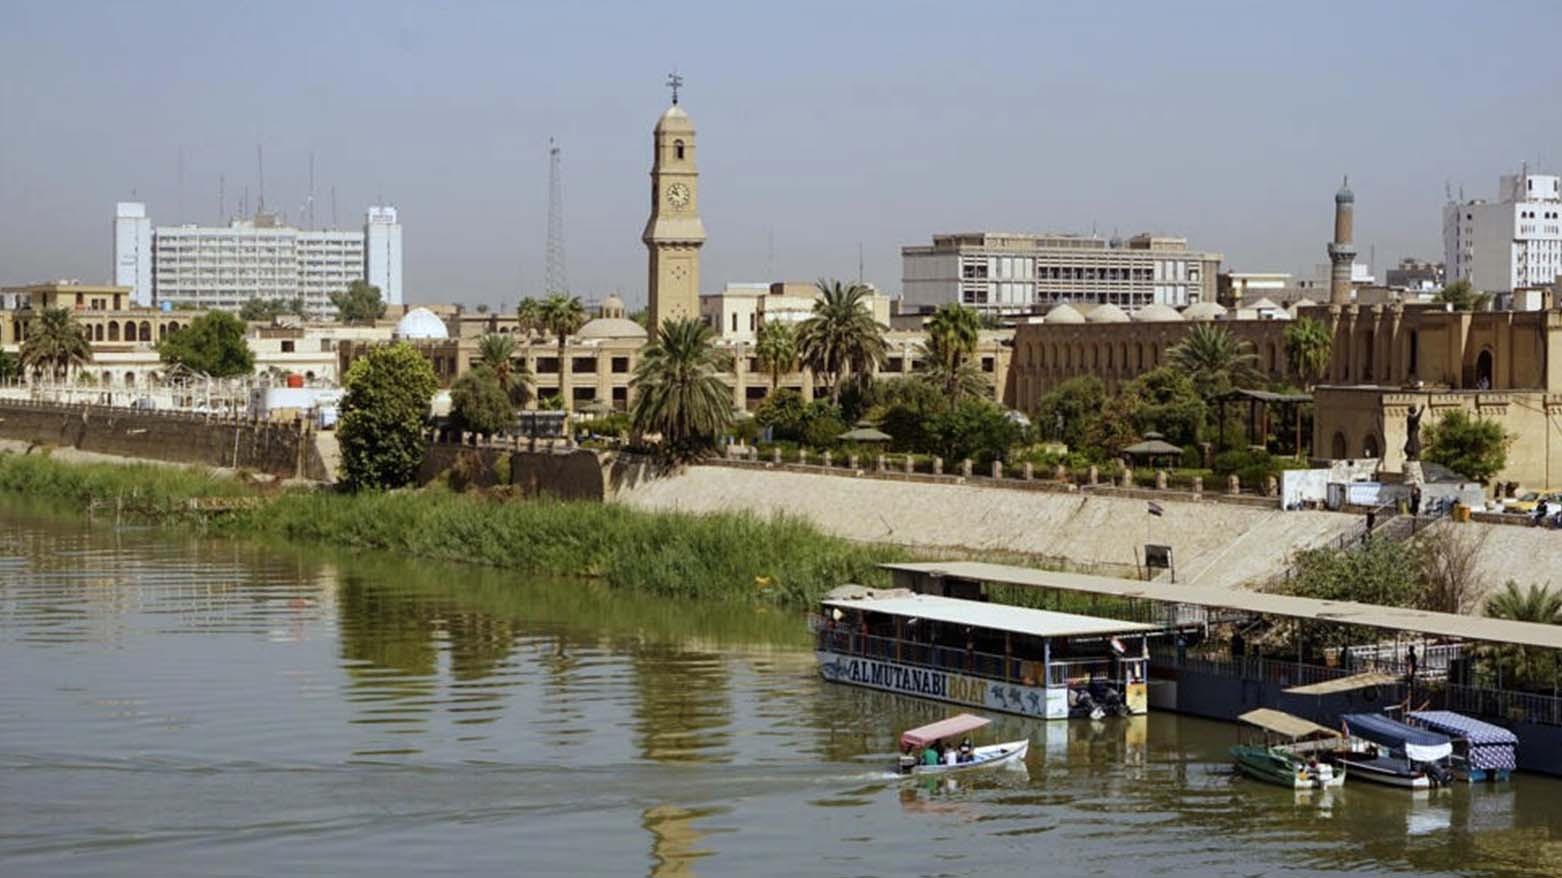 لقطة عامة من بغداد بتاريخ 17 أيلول/سبتمبر 2020 © صباح عرار / ا ف ب/ارشيف